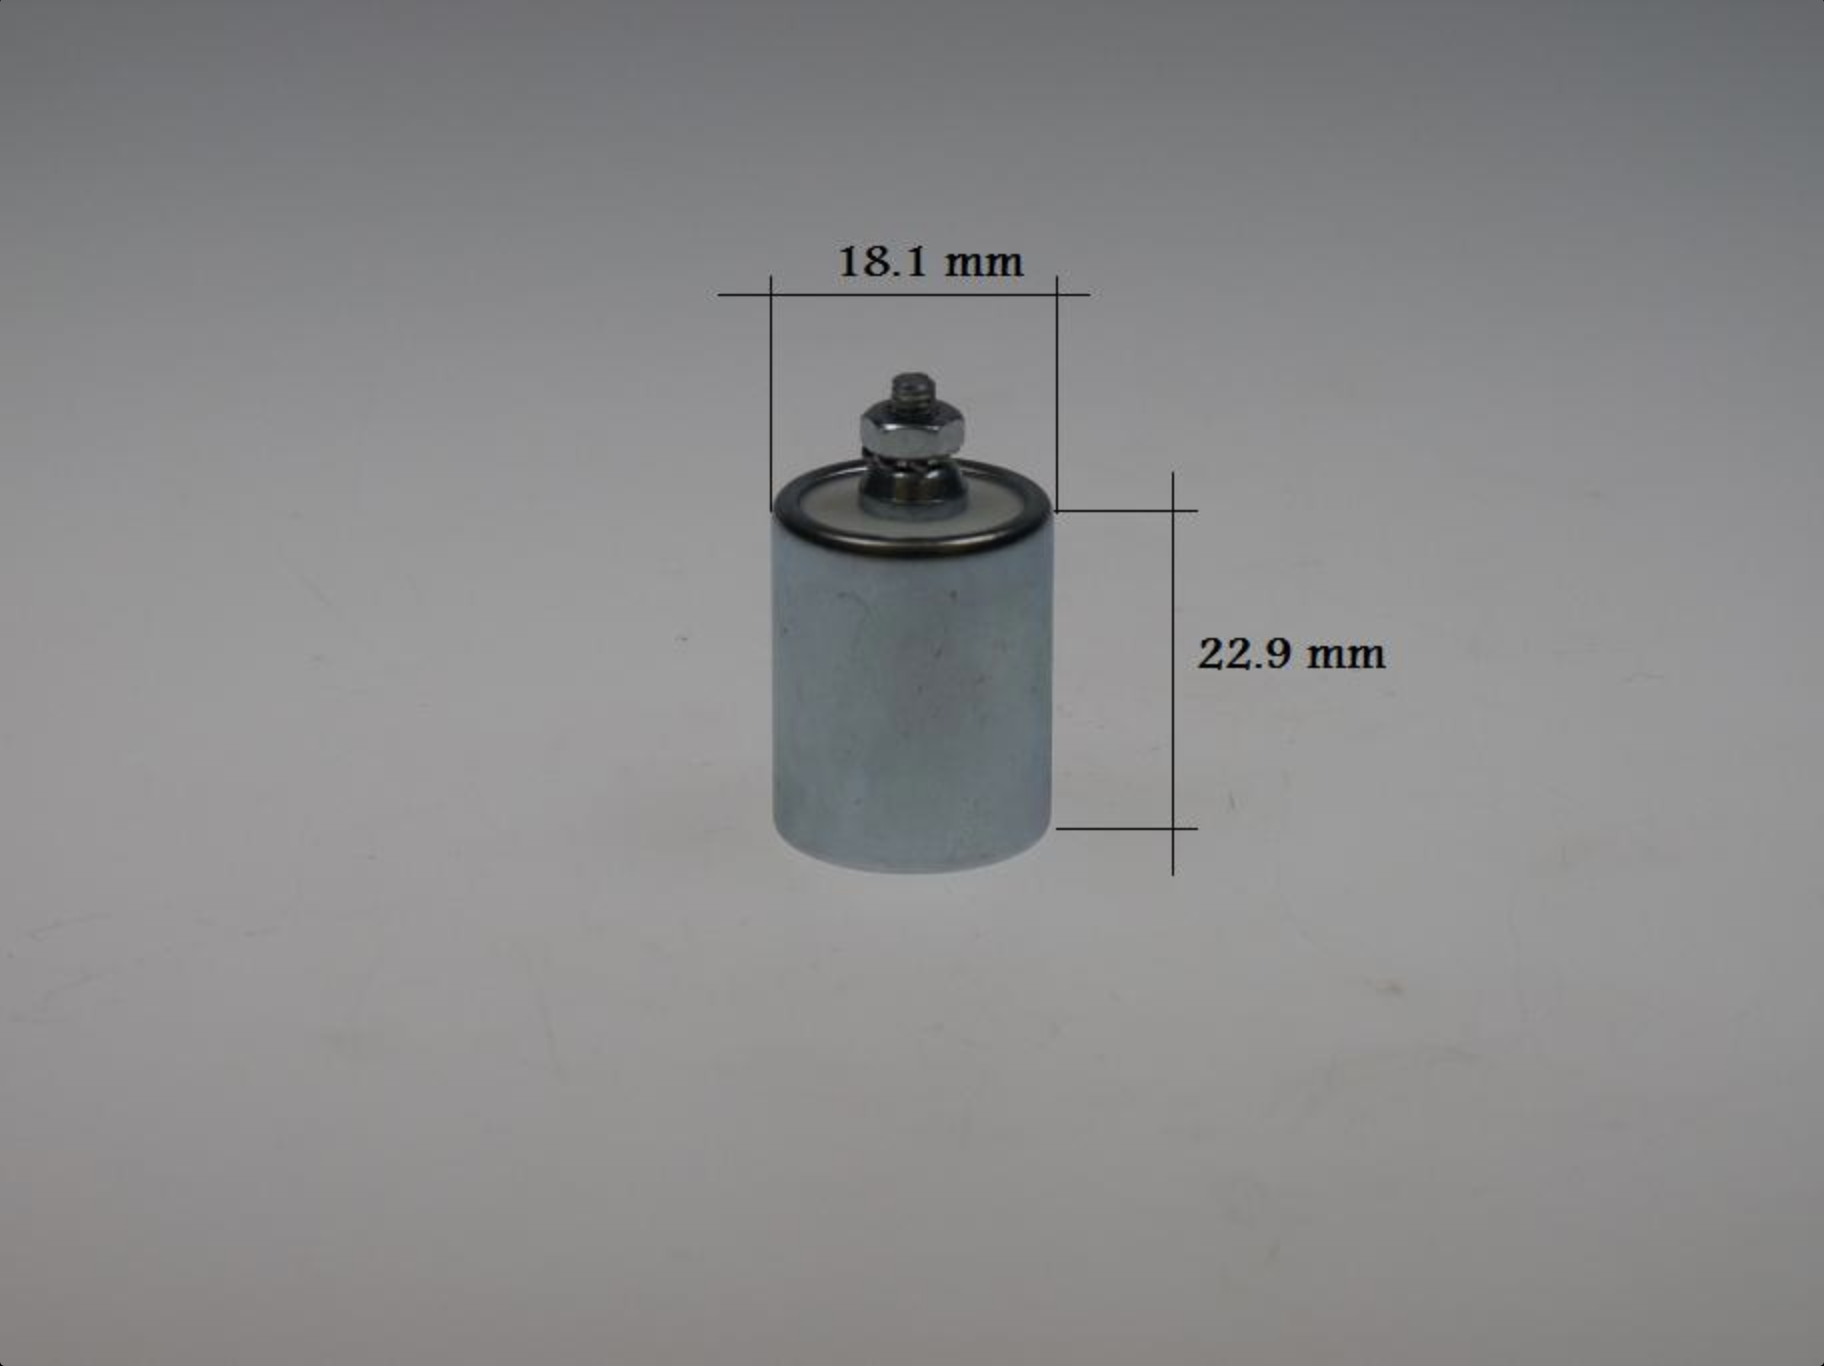 Kondensator Bosch mit Schraube, kleines Modell